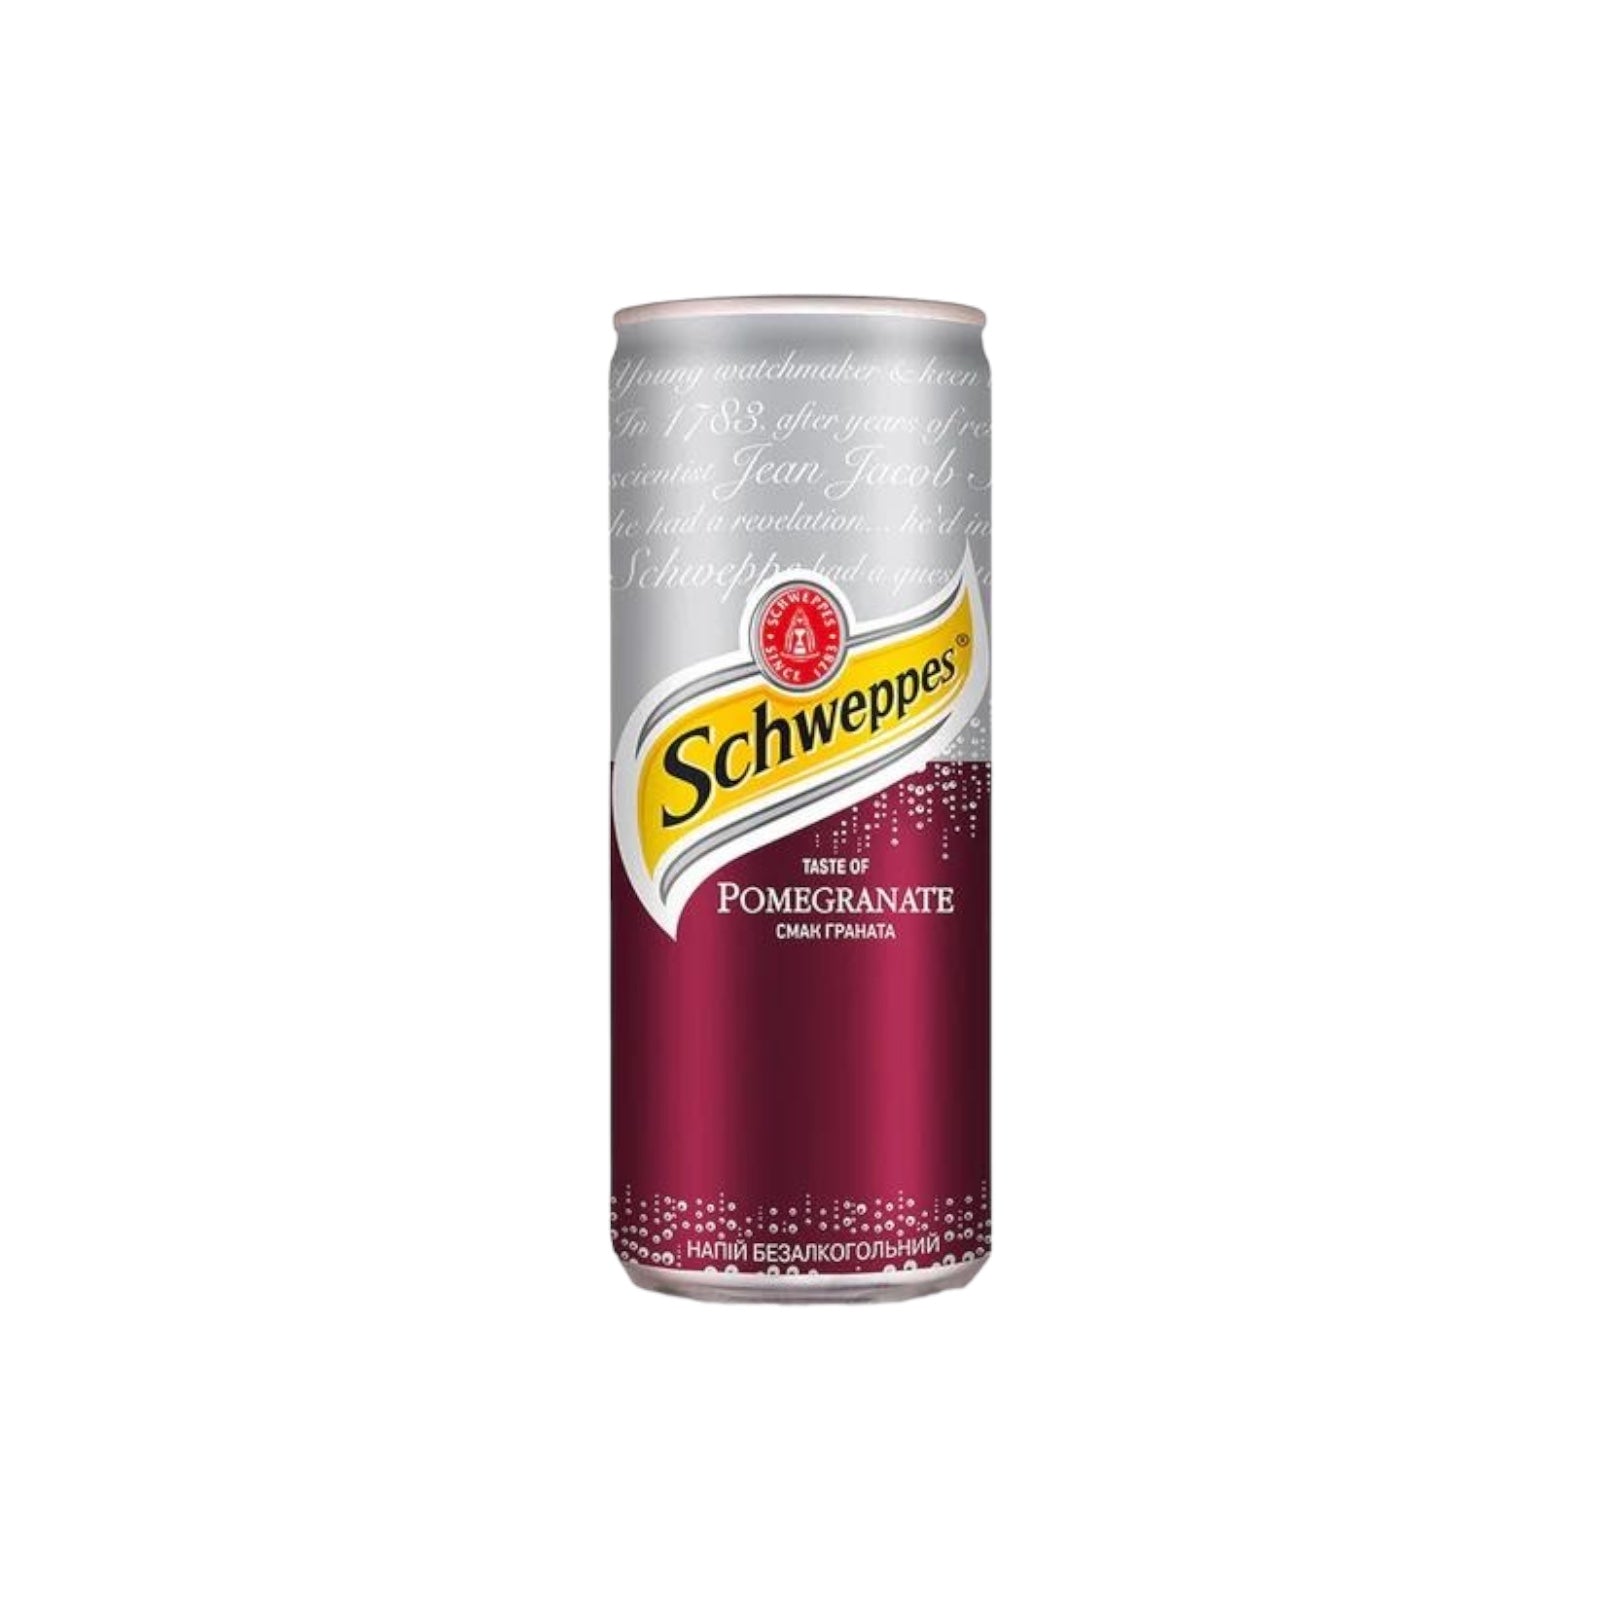 Schweppes - Pomegranate Soda 
330ml